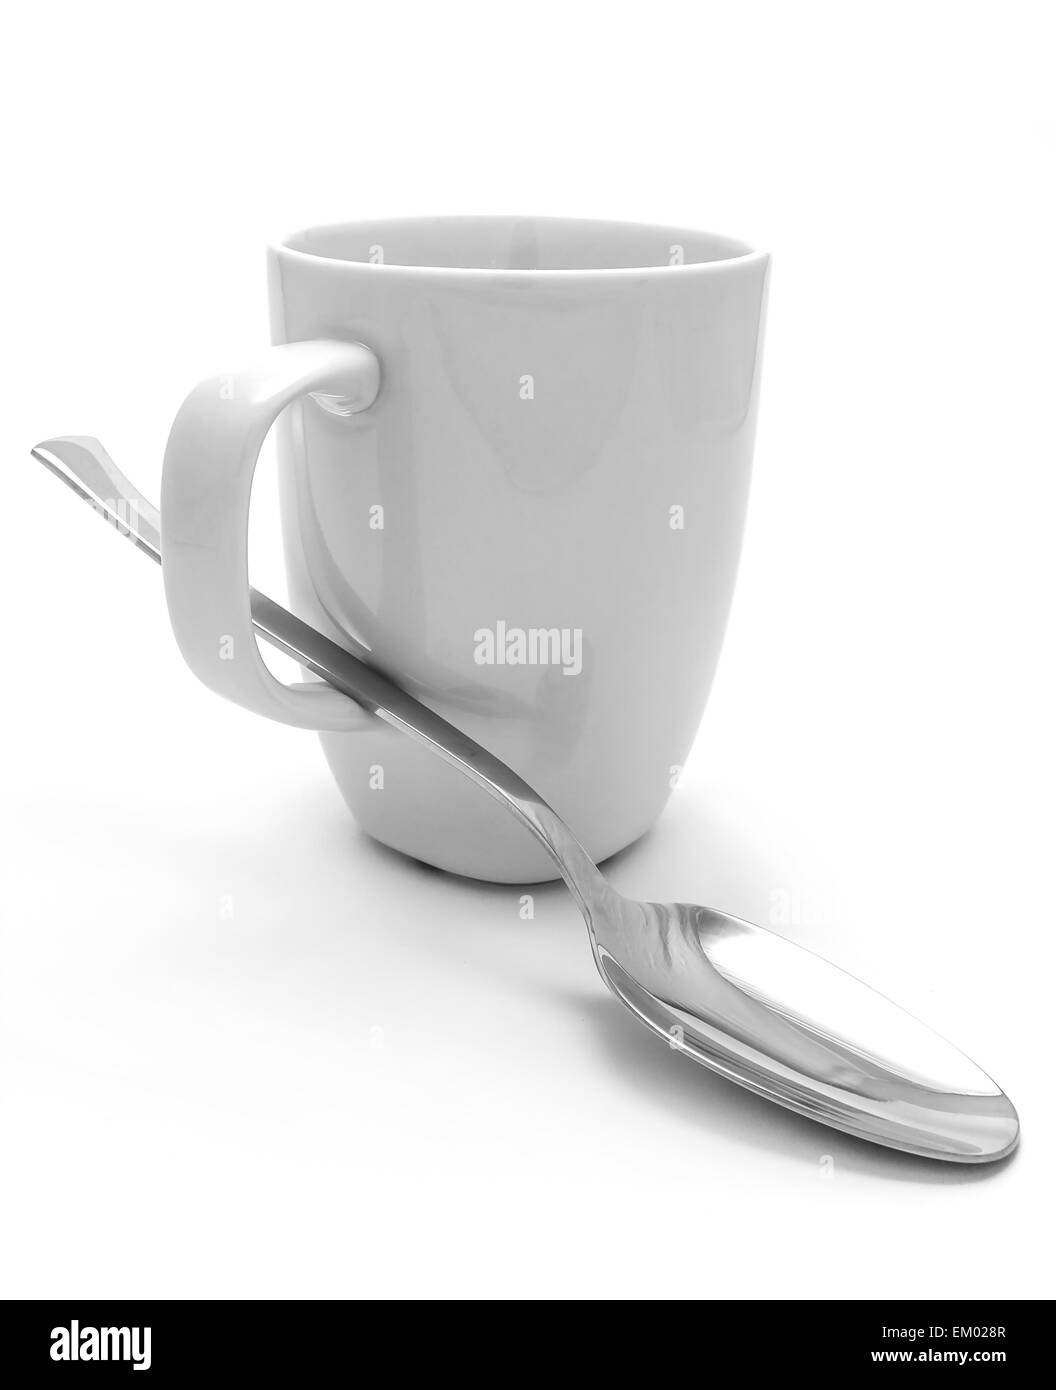 Mug and spoon Stock Photo